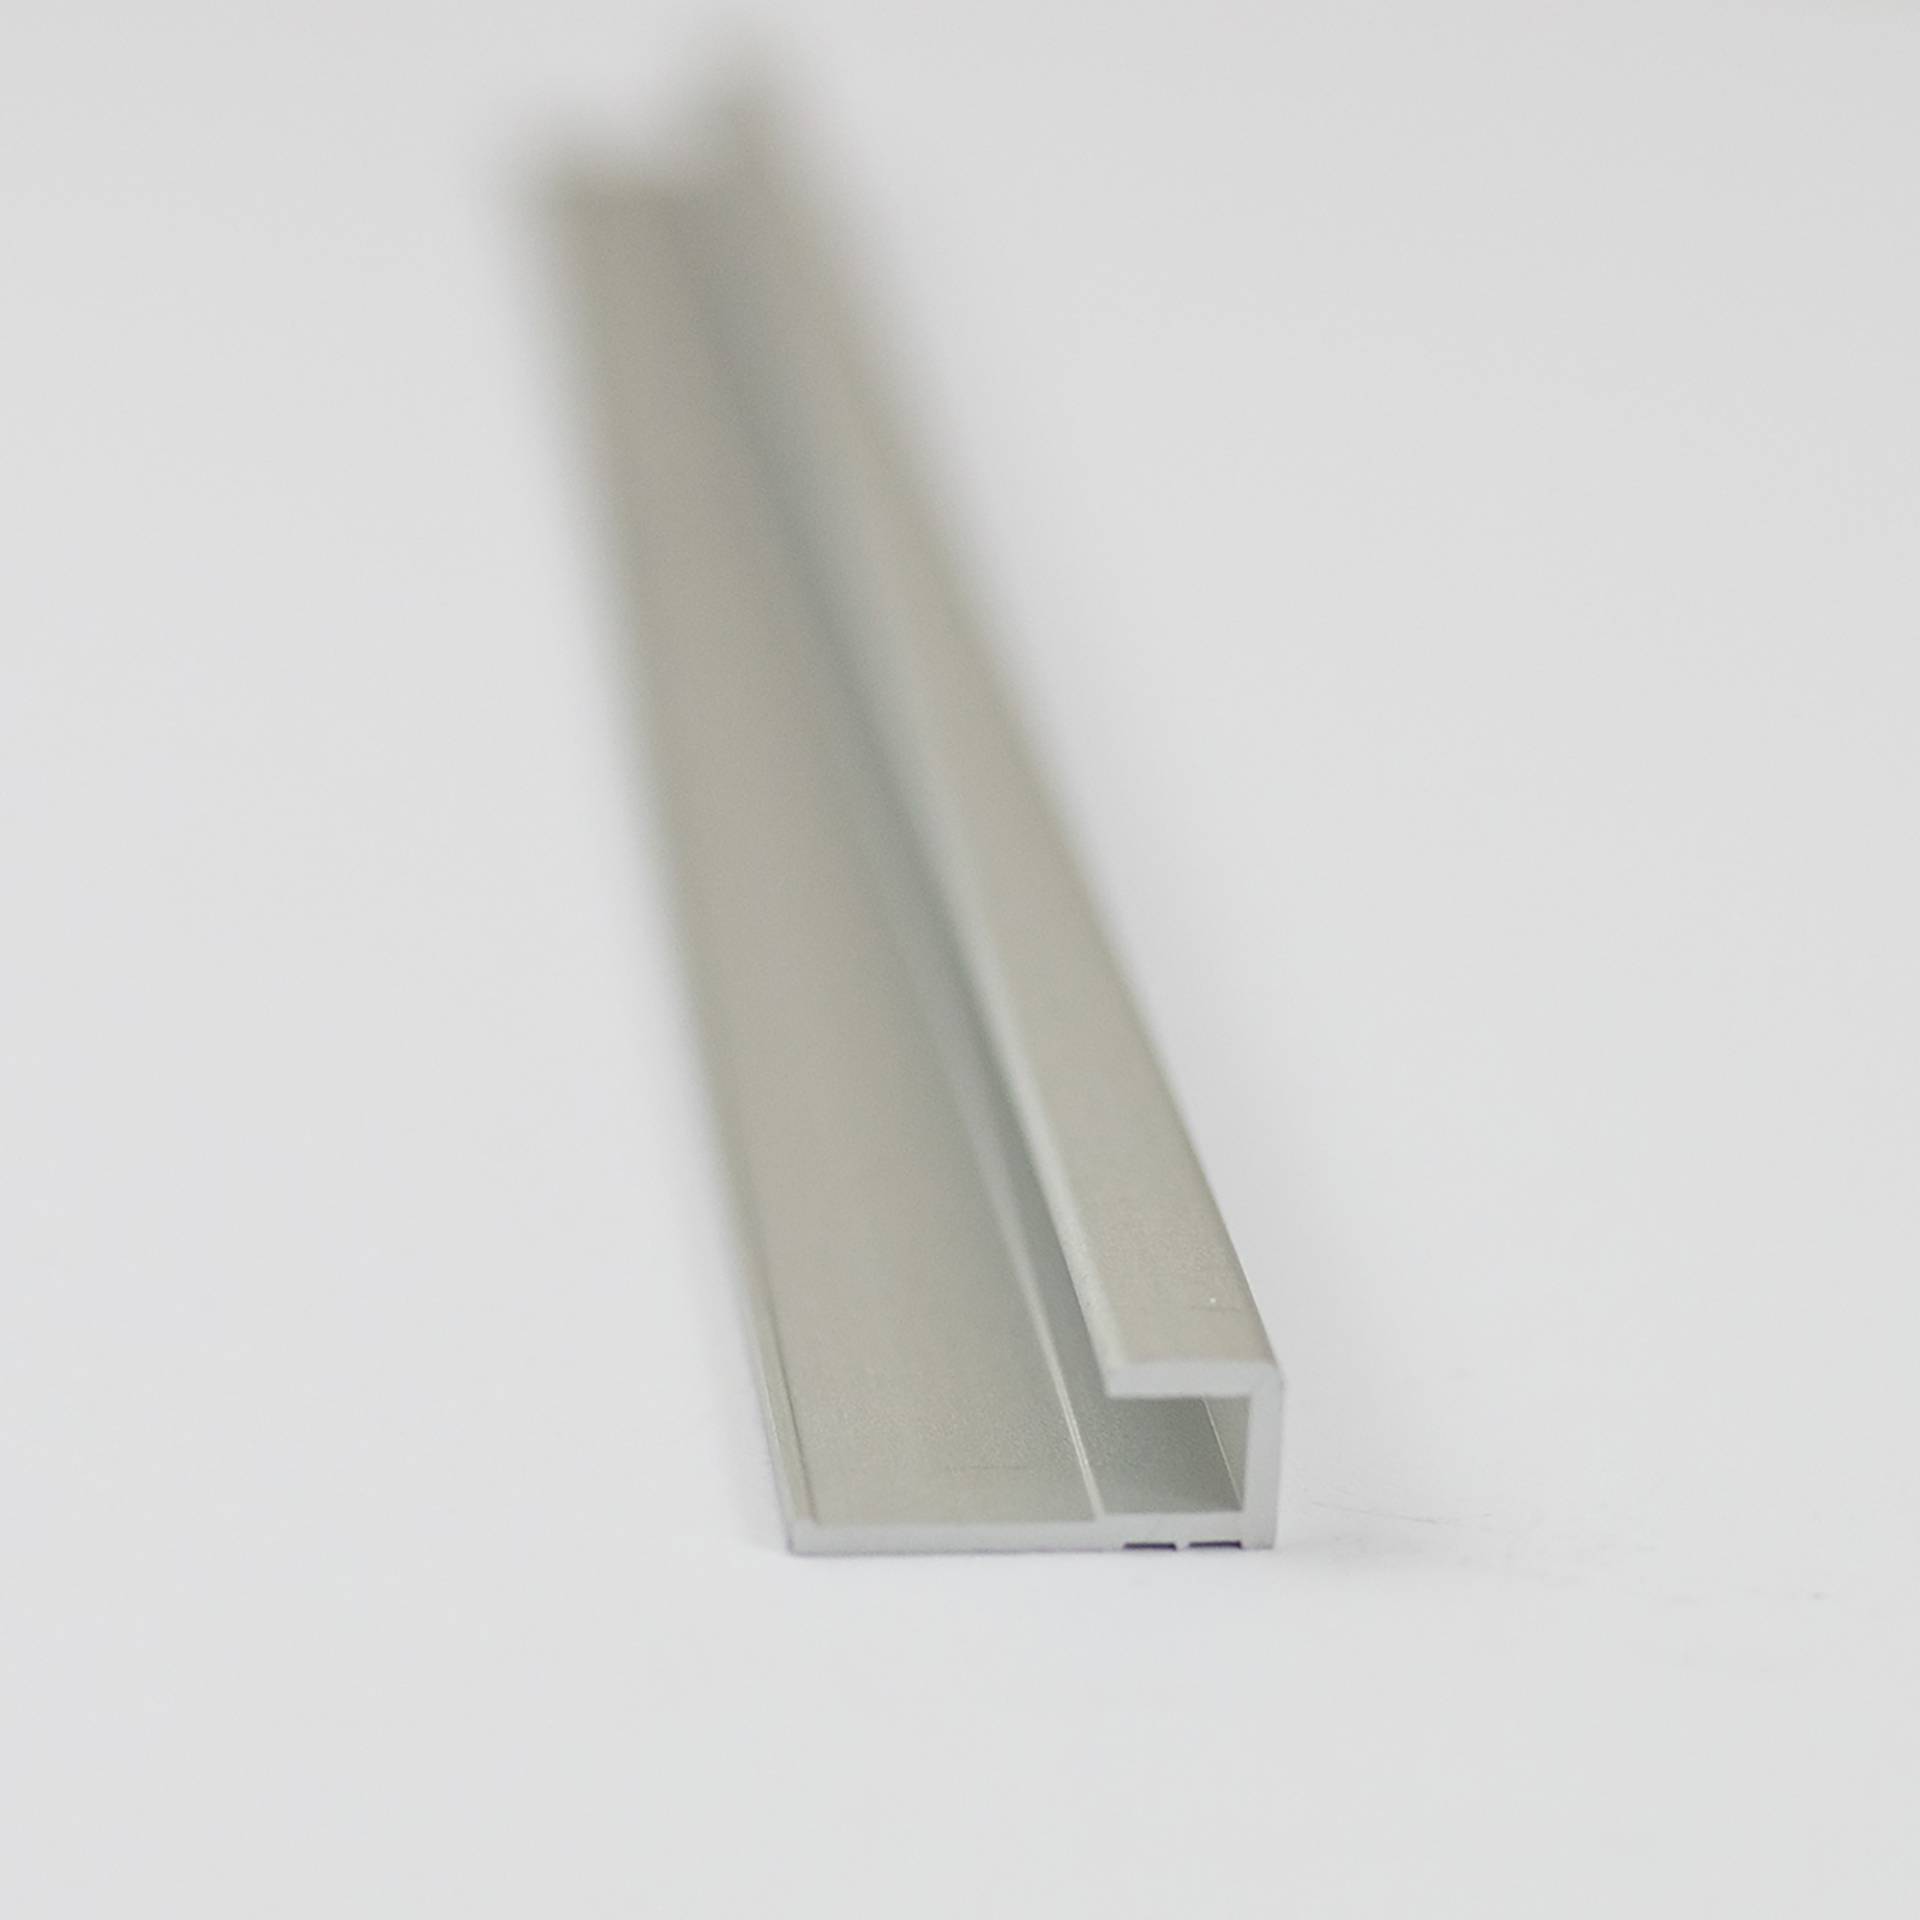 Breuer Abschlussprofil für Rückwandplatten, eckig, alu silber matt, 2550 mm von Breuer